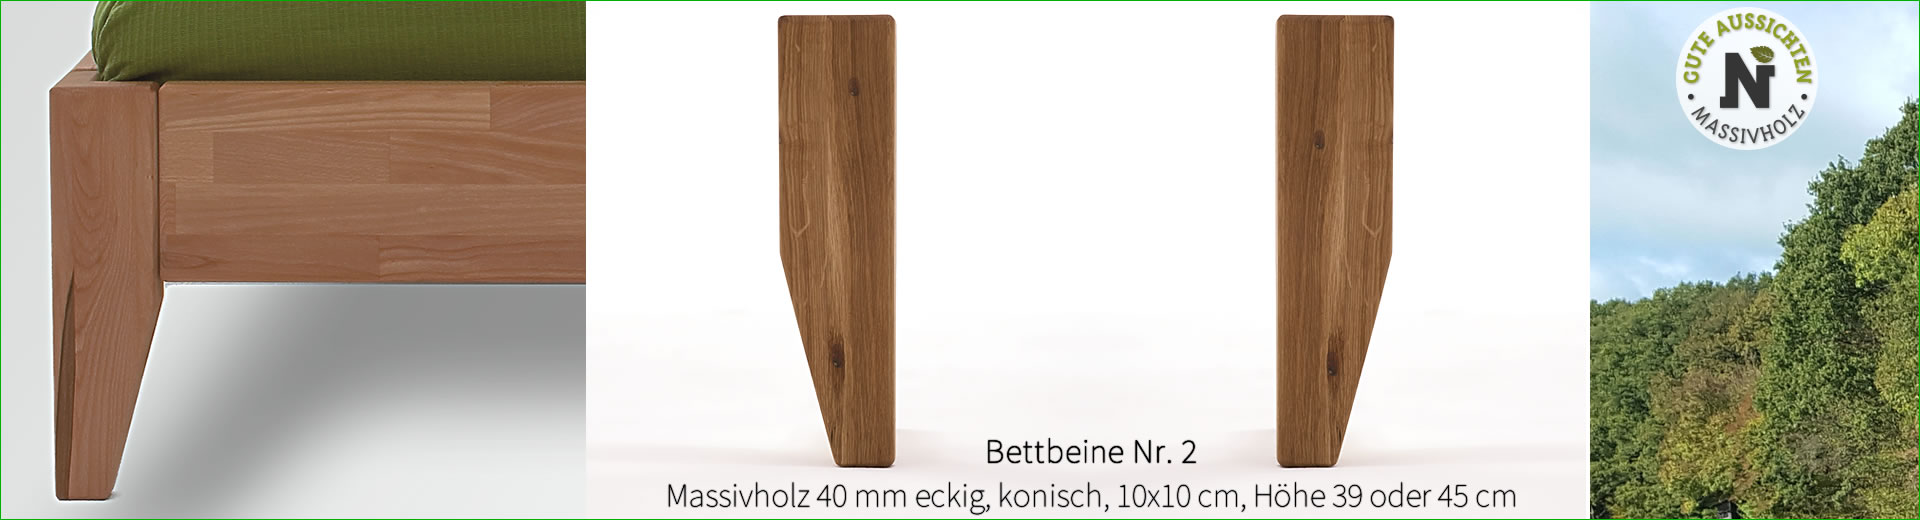 Bettbeine Nr. 2, Massivholz 40 mm eckig, konisch 10x10 cm, Höhe 39 cm, Kernbuche